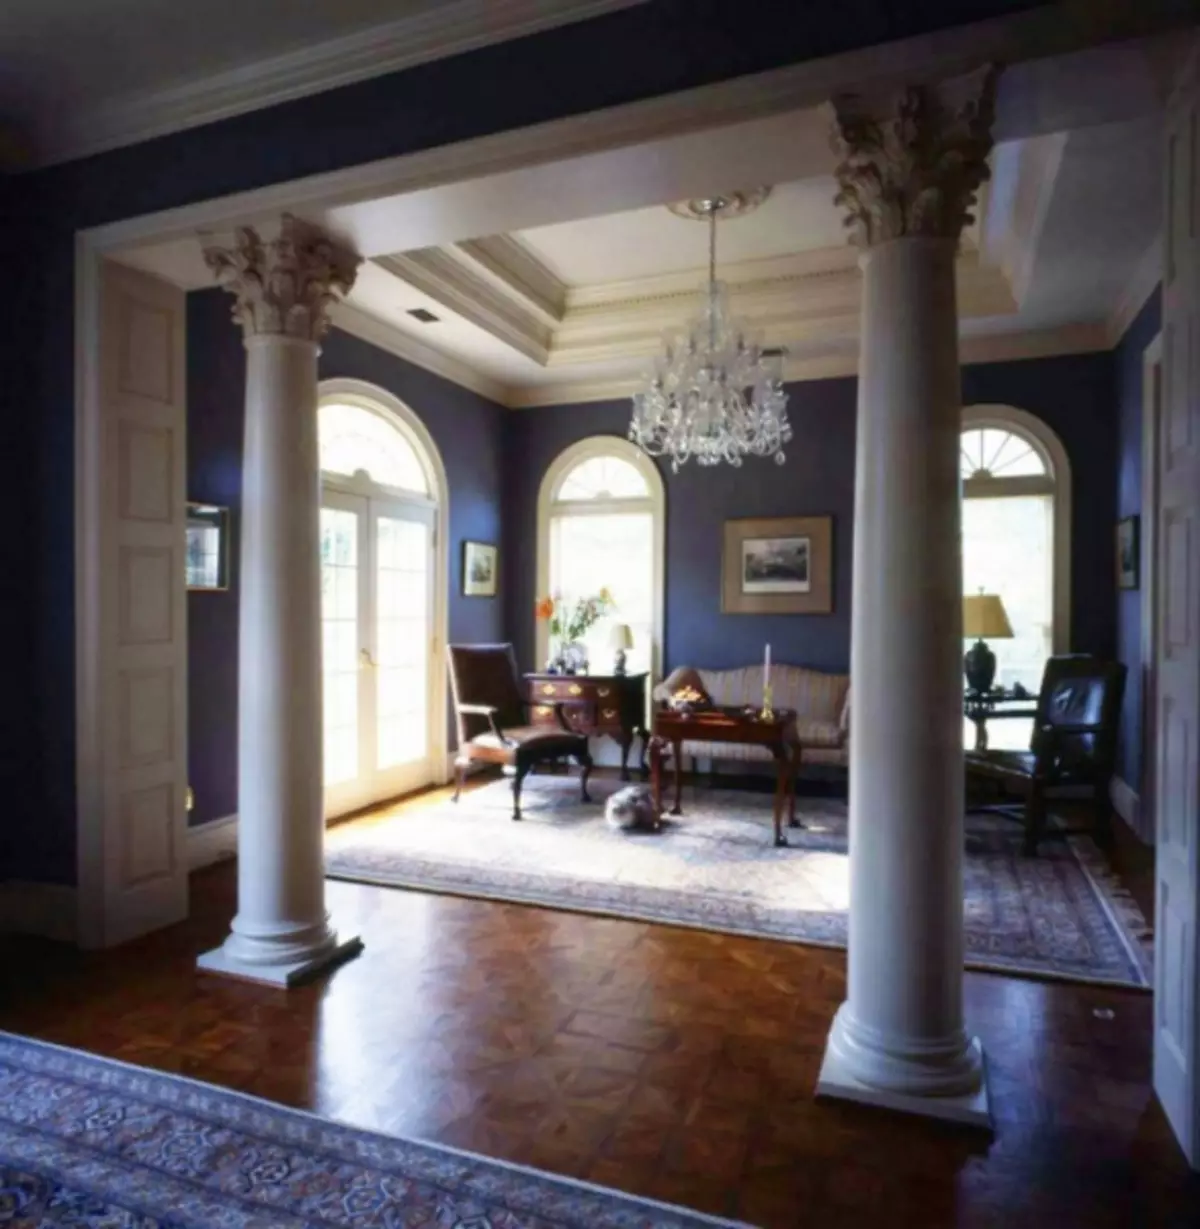 Stĺpce v interiéri: starožitný a moderný štýl (39 fotografií)